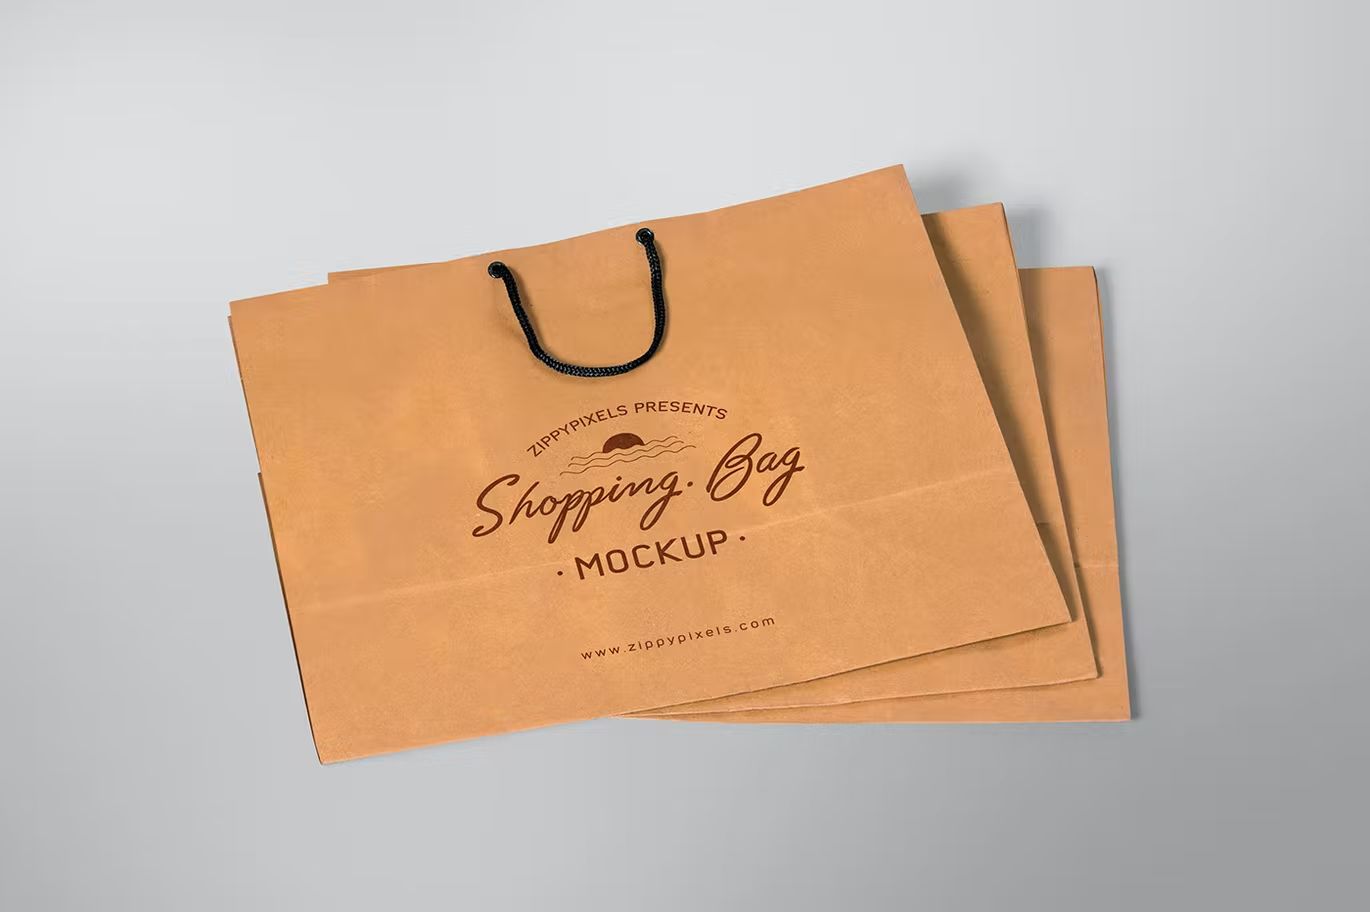 موکاپ ساک خرید Appealing Shopping Bag Mockups - 10